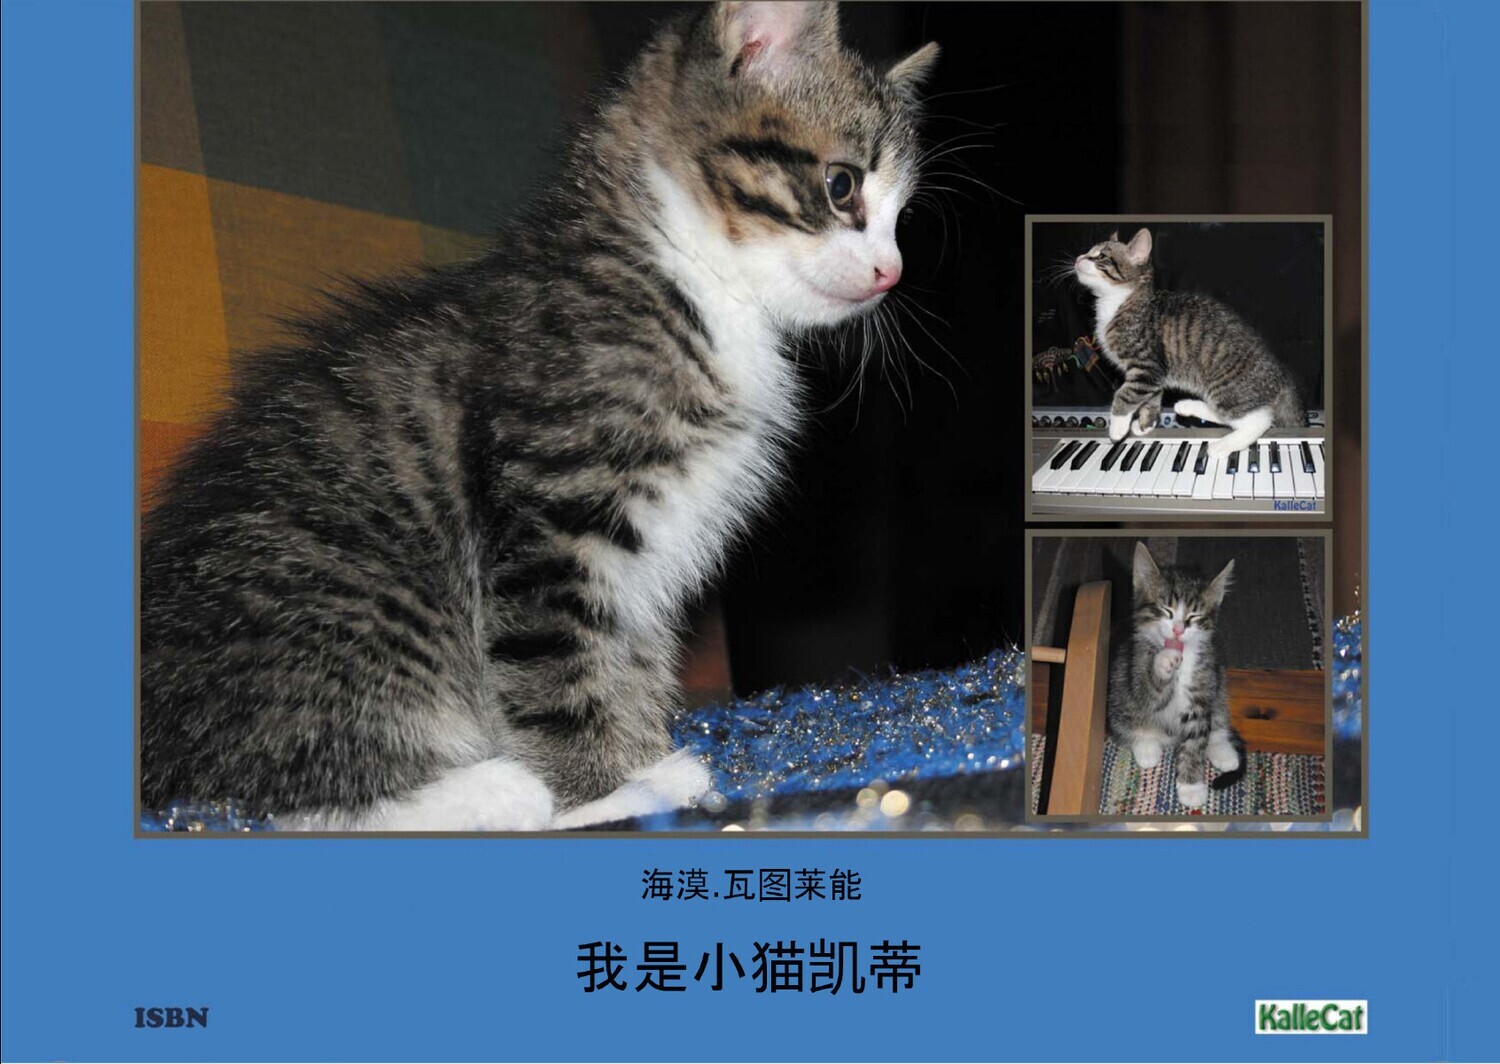 我是小猫凯蒂: 照片书 - e Photo Book - pdf - 中文